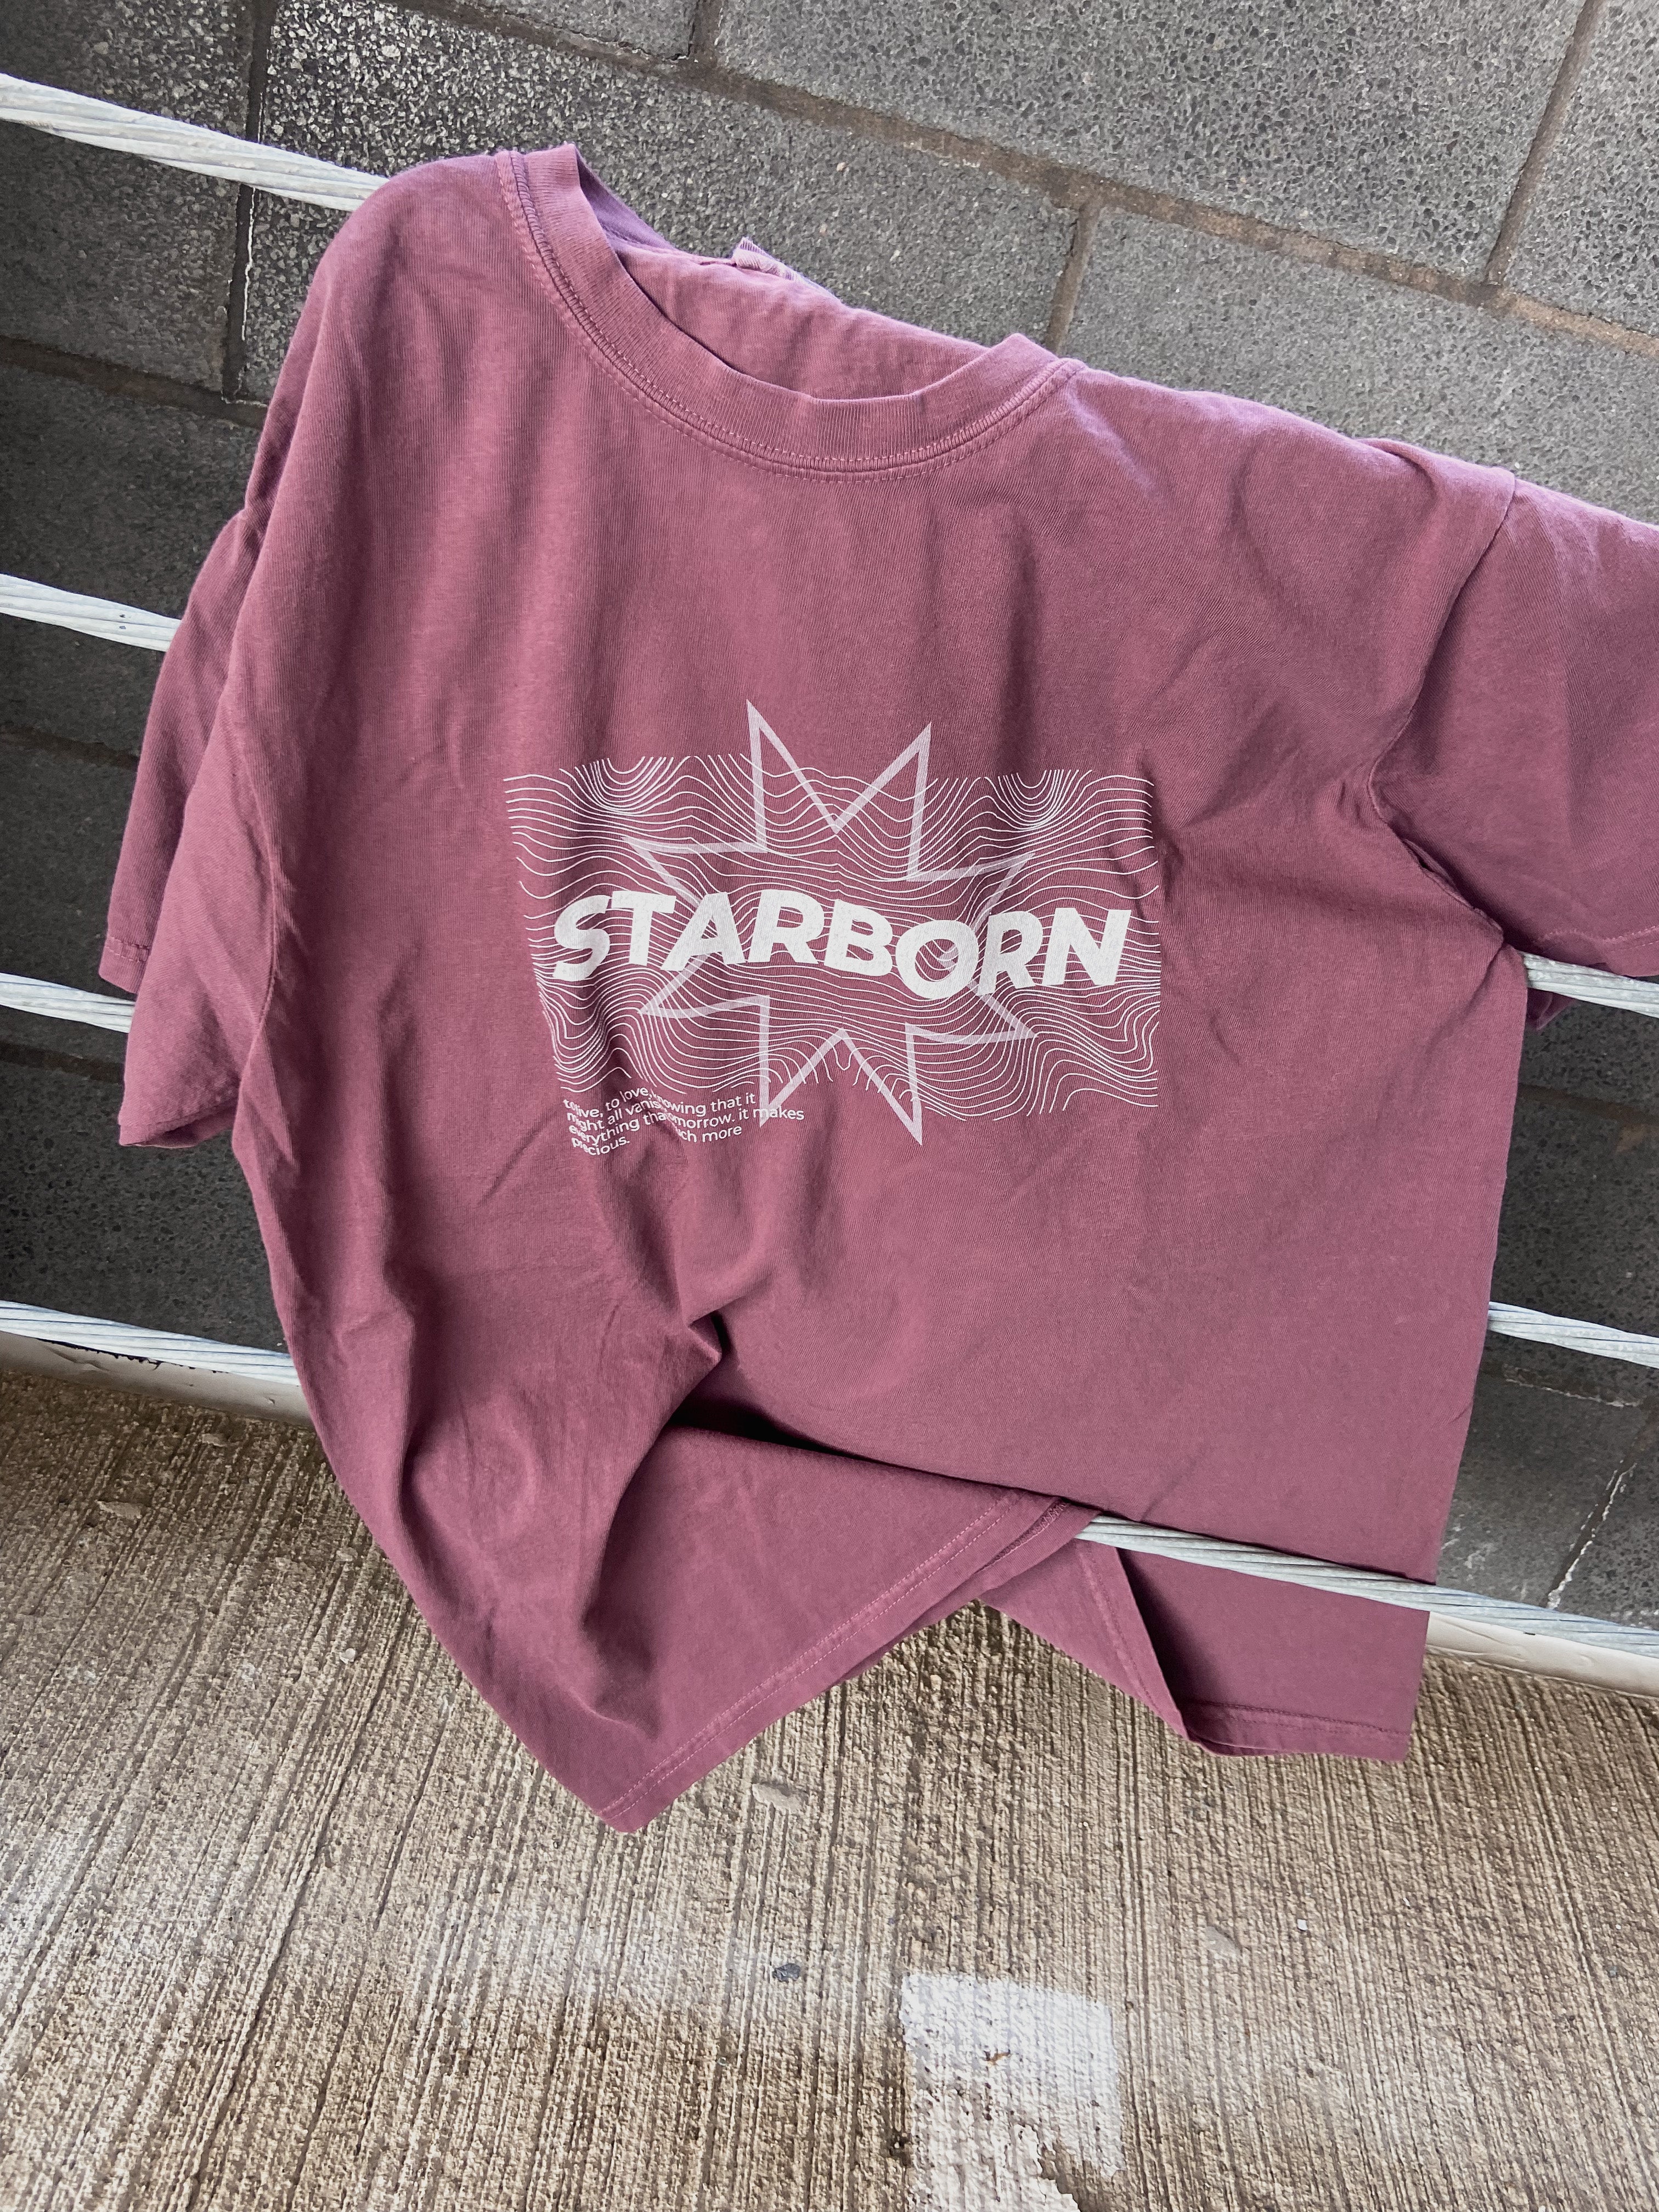 STARBORN TEE SHIRT